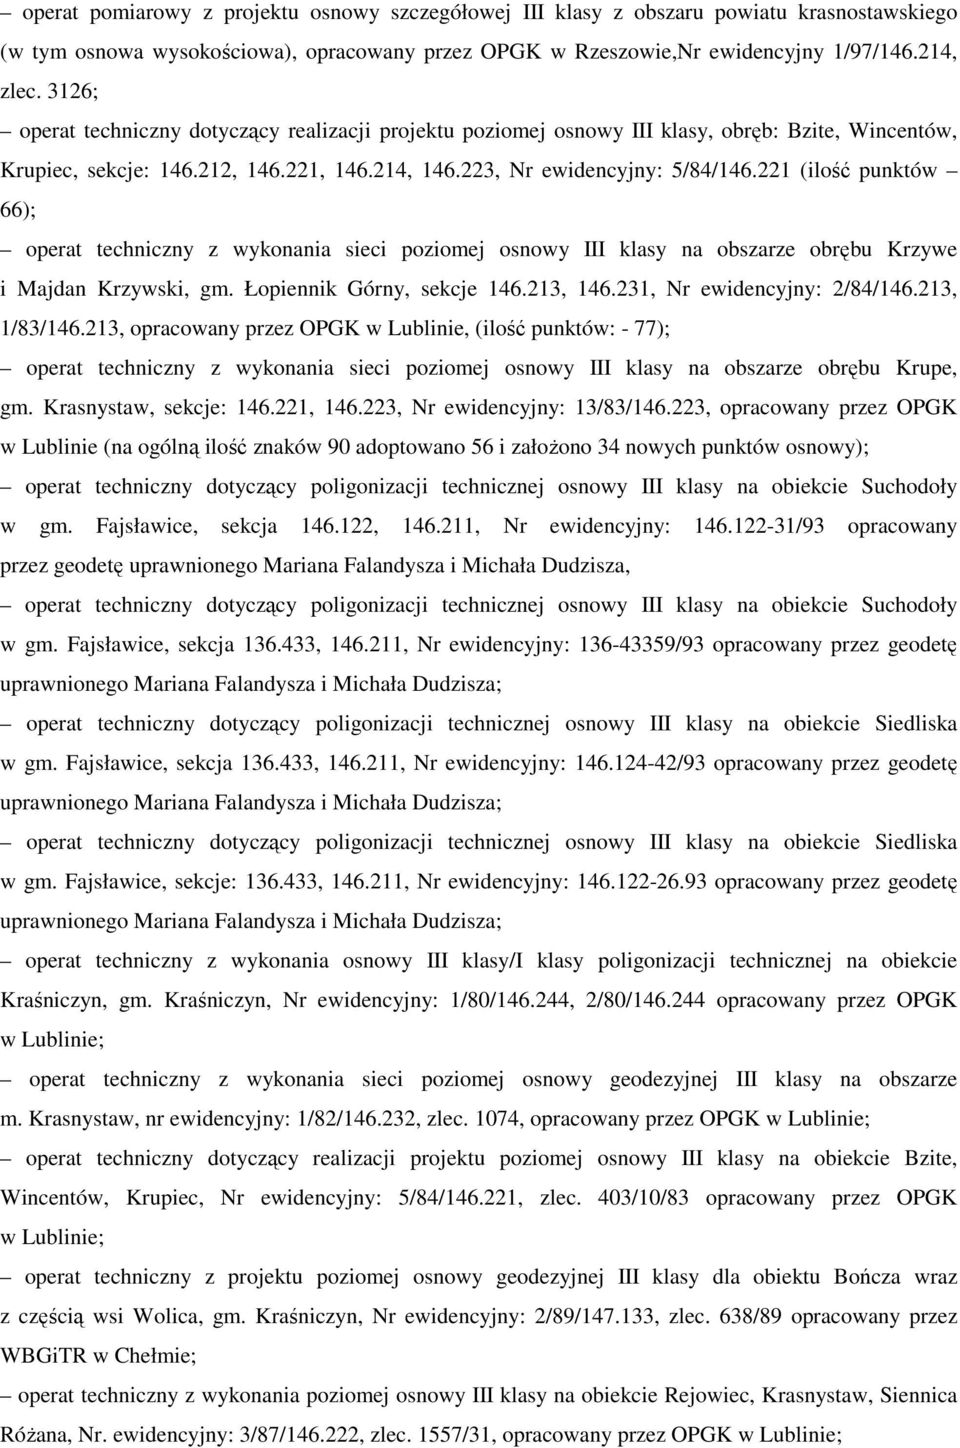 221 (ilość punktów 66); operat techniczny z wykonania sieci poziomej osnowy III klasy na obszarze obrębu Krzywe i Majdan Krzywski, gm. Łopiennik Górny, sekcje 146.213, 146.